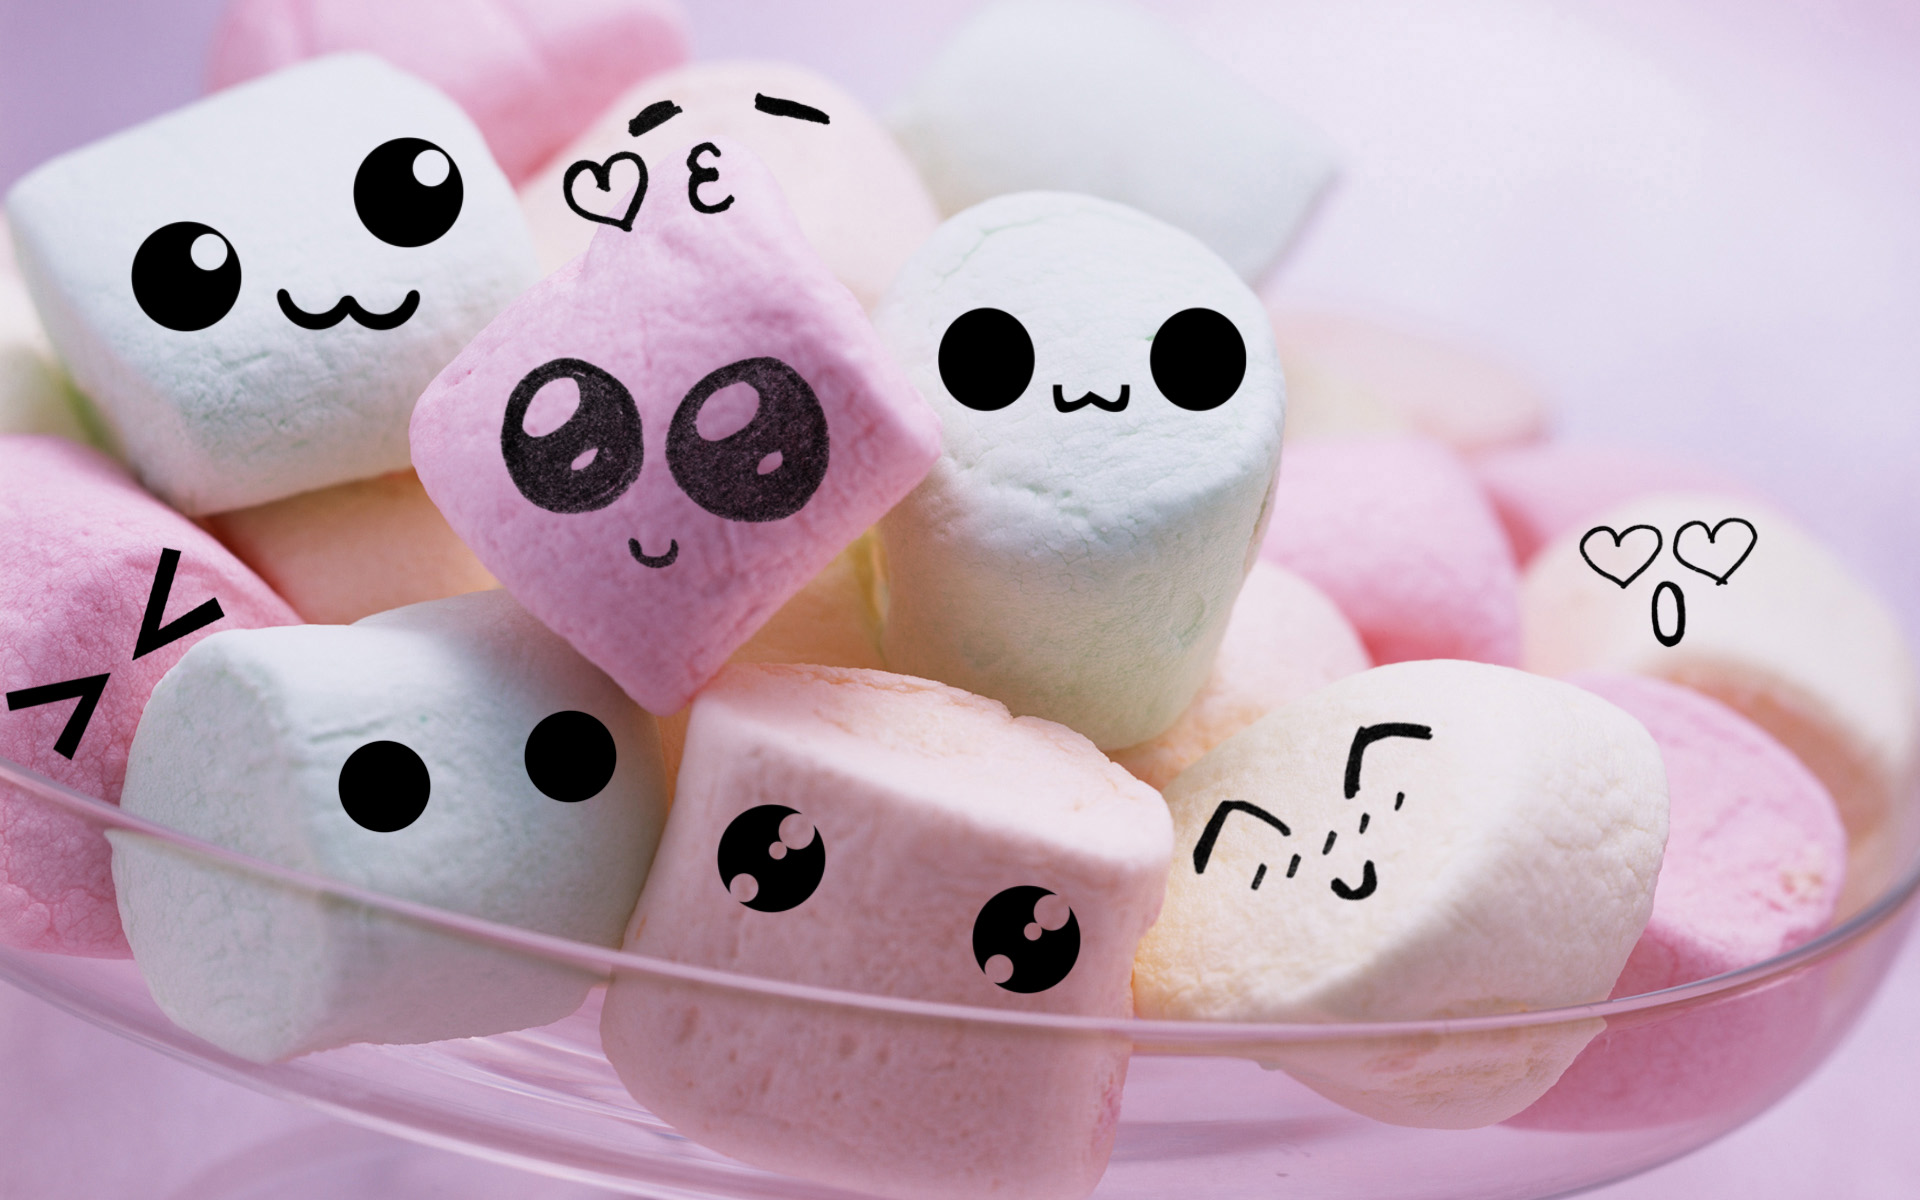 Marshmallow: Gần đây, những chiếc bánh dẻo Marshmallow xốp mềm đã trở thành món ăn yêu thích của nhiều người. Hãy xem ngay những hình ảnh đầy ngọt ngào và mềm mại liên quan để thỏa mãn sự tò mò của bạn! 